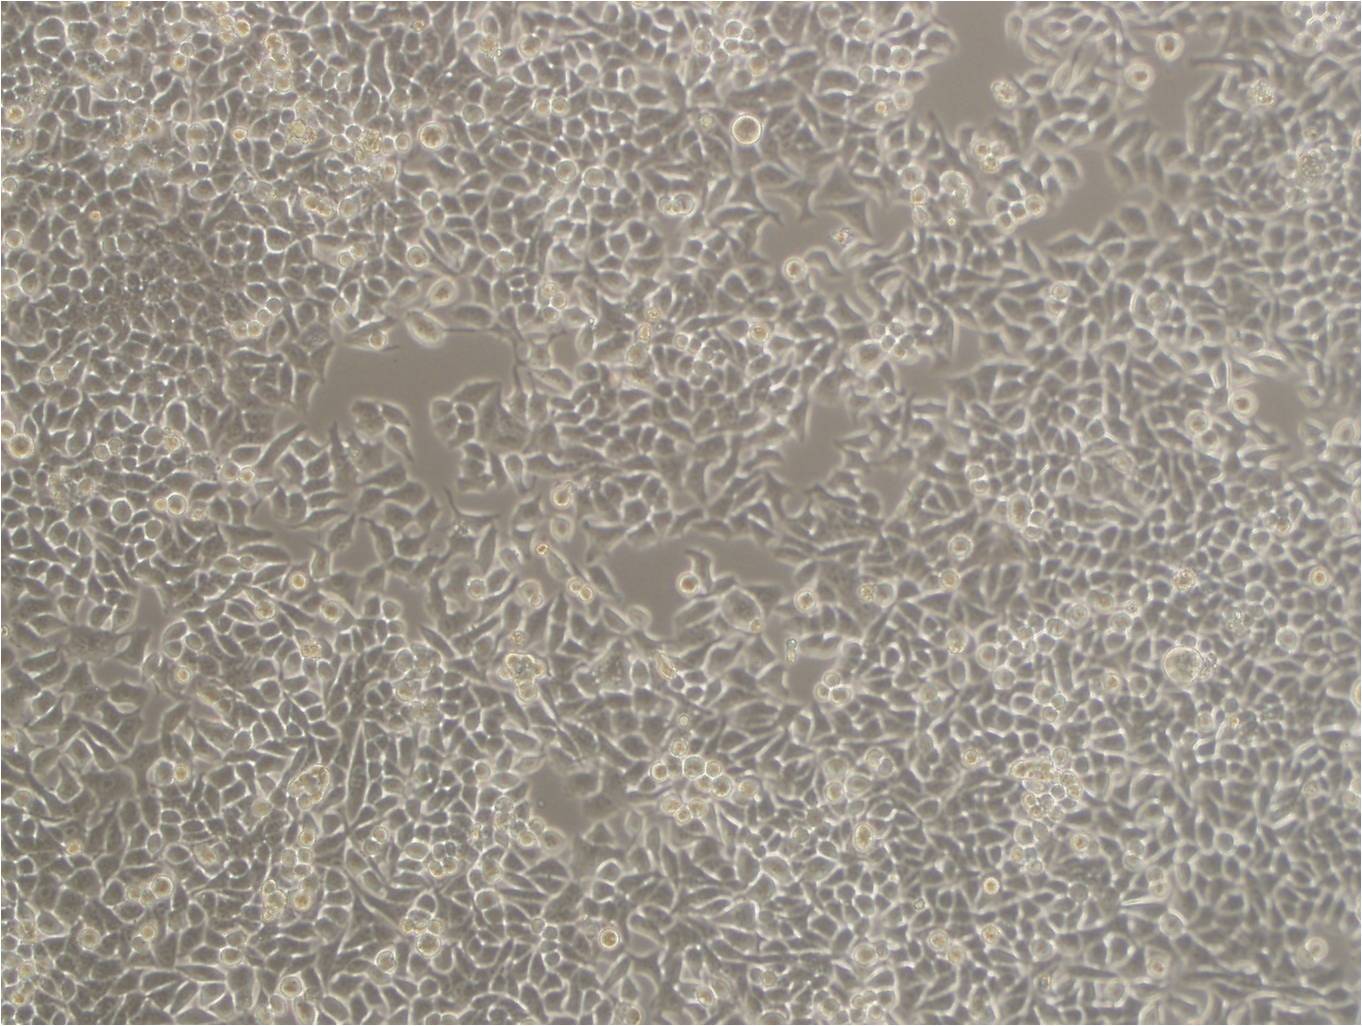 OCM-1 epithelioid cells人眼脉络膜黑色素瘤细胞系,OCM-1 epithelioid cells